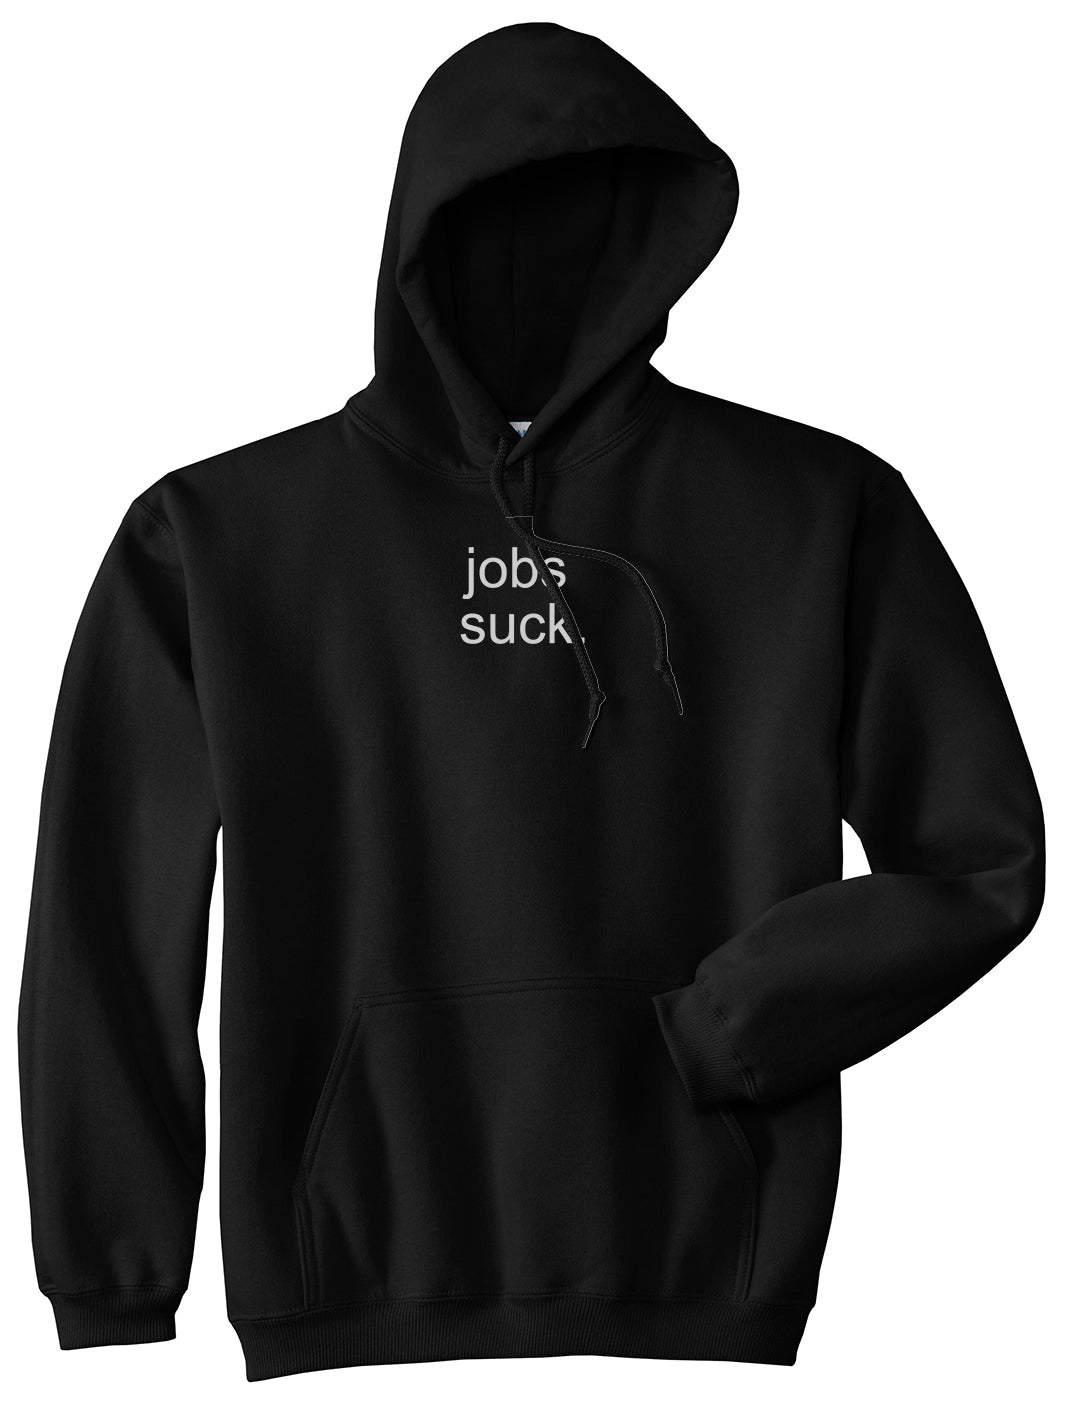 Jobs Suck Pullover Hoodie in Black